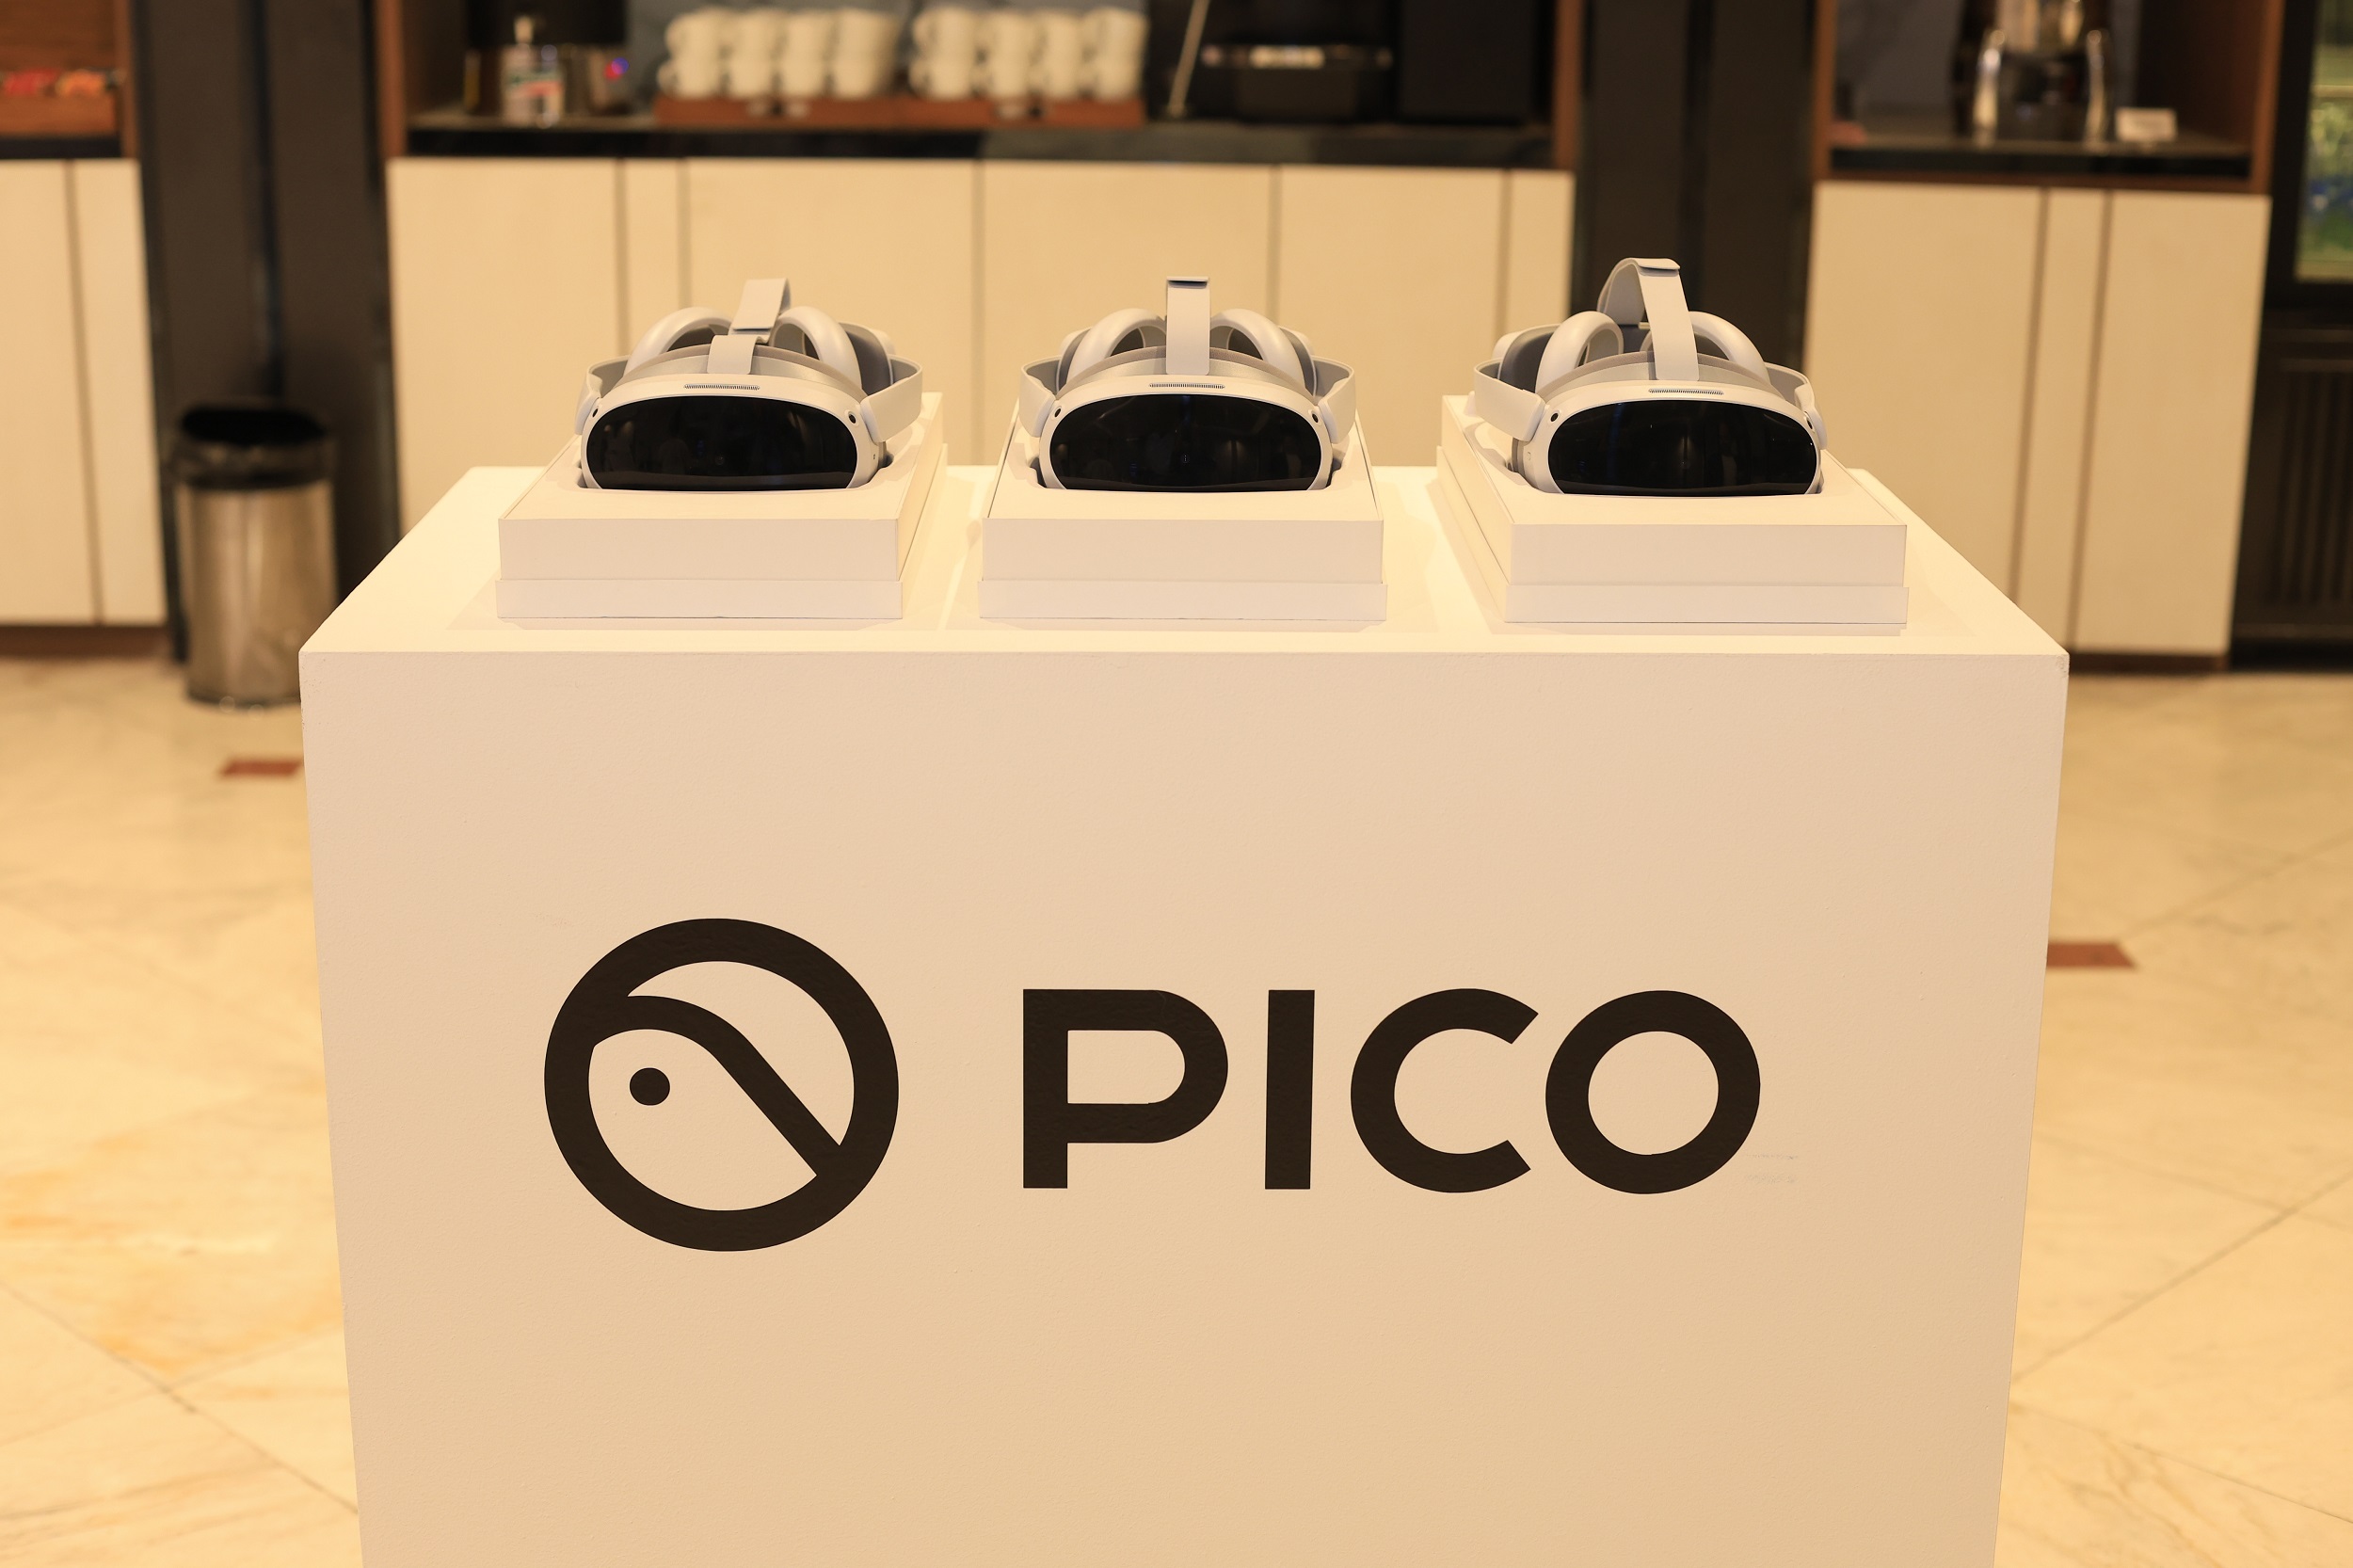 สัมผัสประสบการณ์ความบันเทิงแห่งโลกใหม่กับ PICO 4 ชุดอุปกรณ์ VR แบบ All-in-One รุ่นแรกที่ทำตลาดอย่างเป็นทางการในประเทศไทย